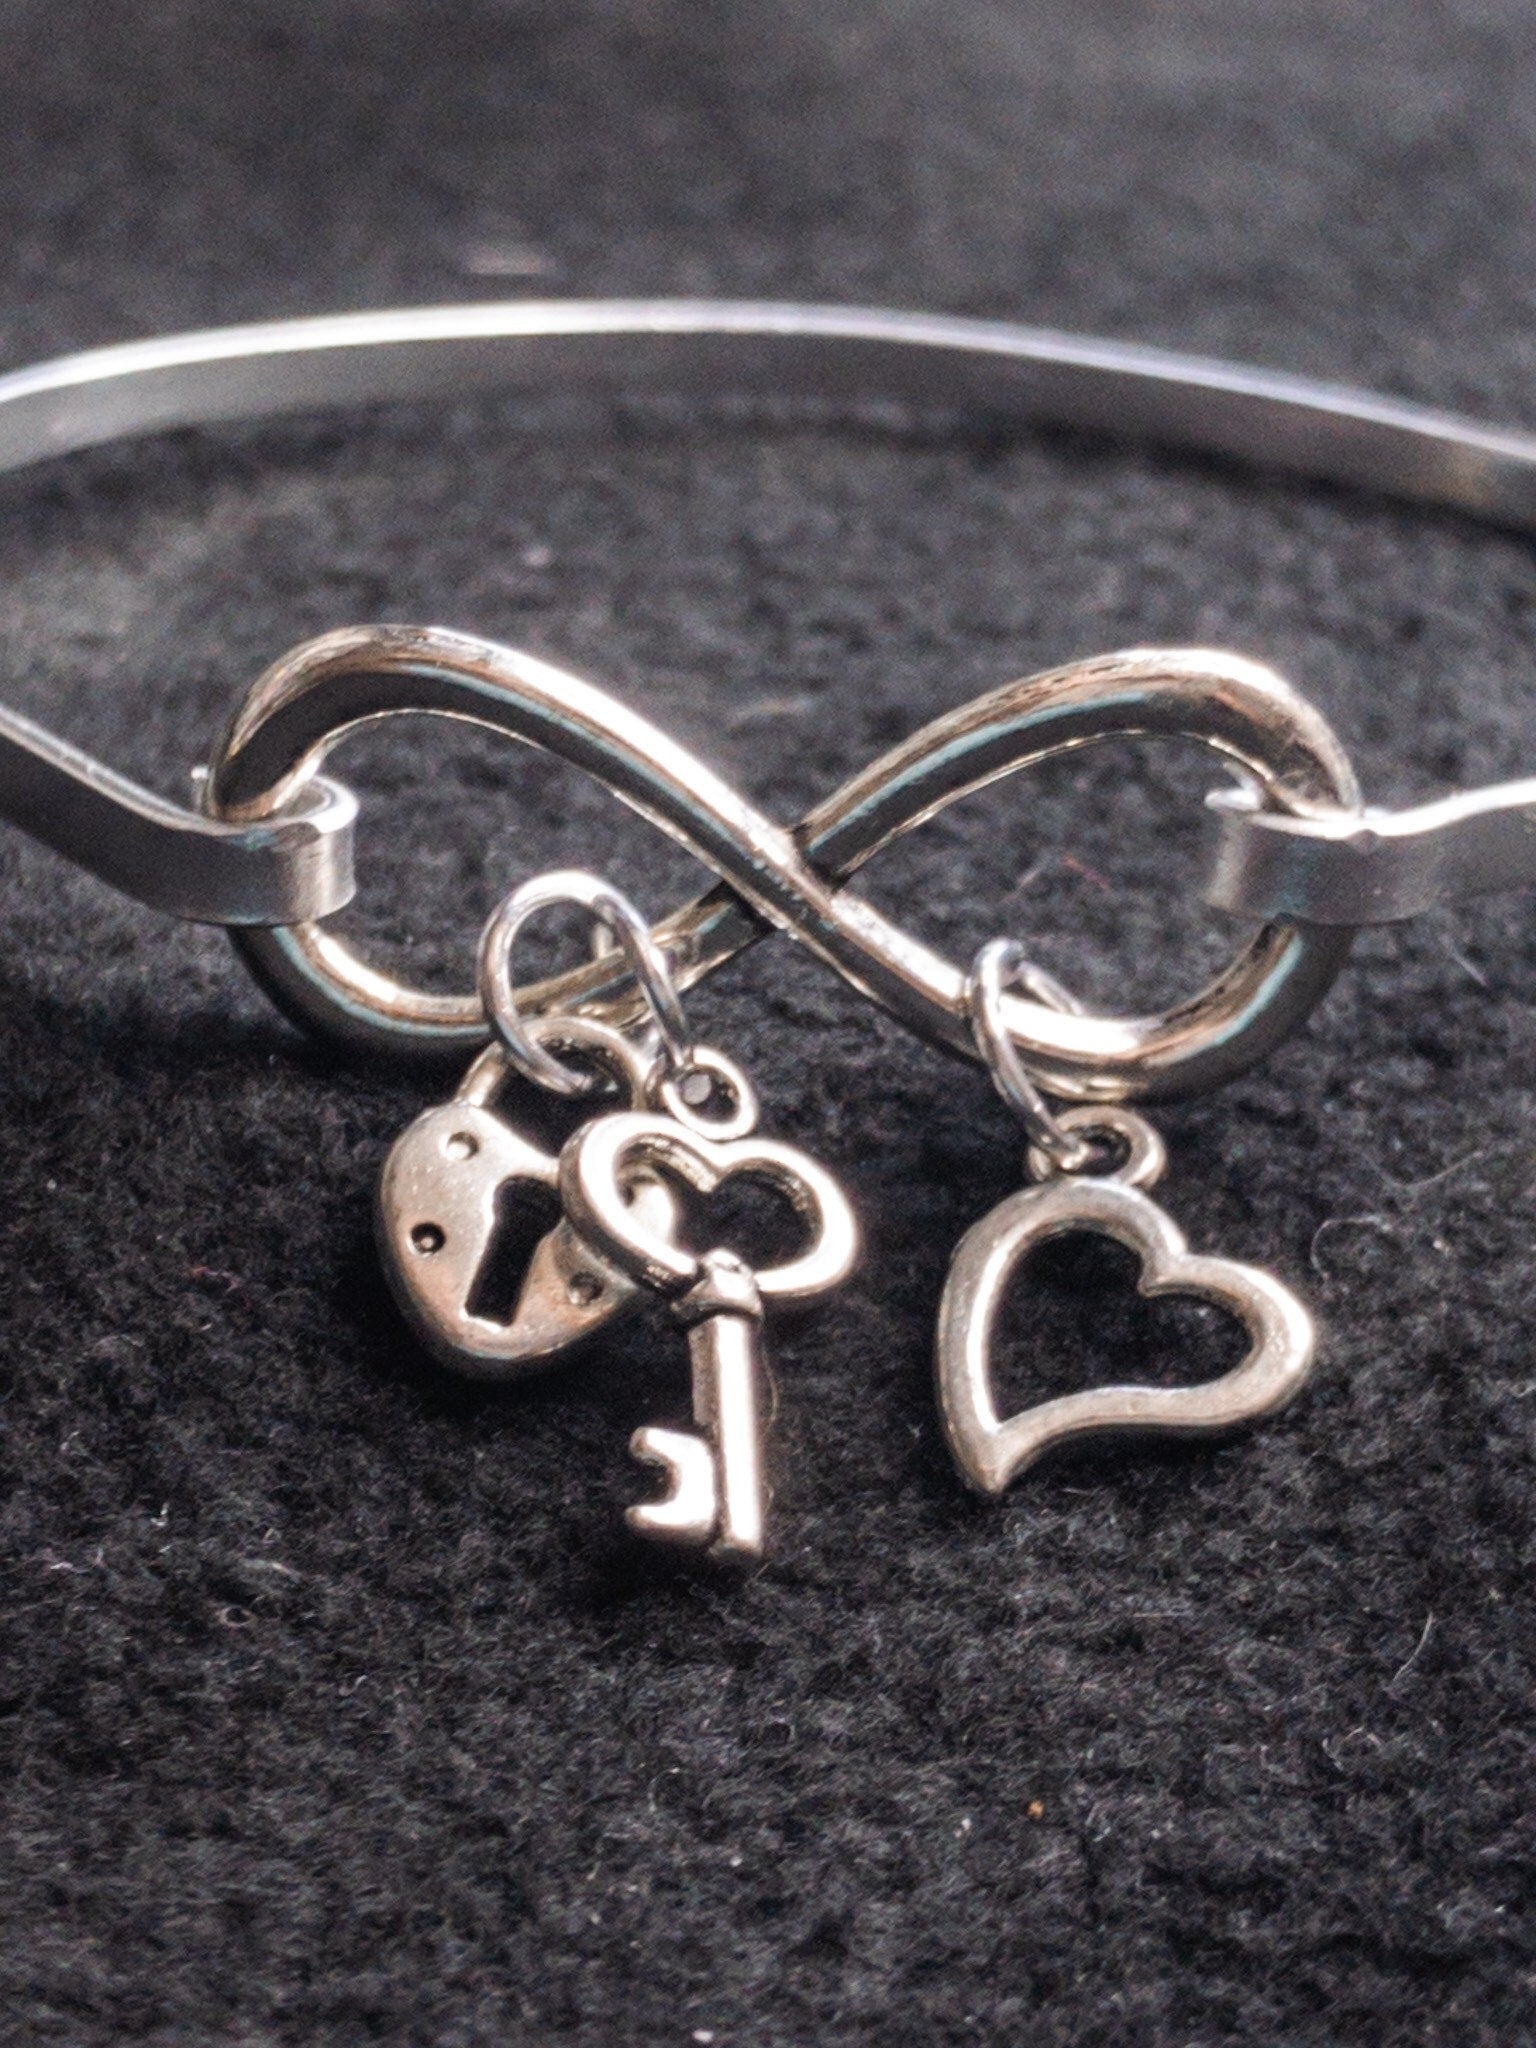 Infinity bracelet mothers day gift, Never ending infinity cuff bracelet, Silver slide on bangle love bracelet, Best friends forever gift